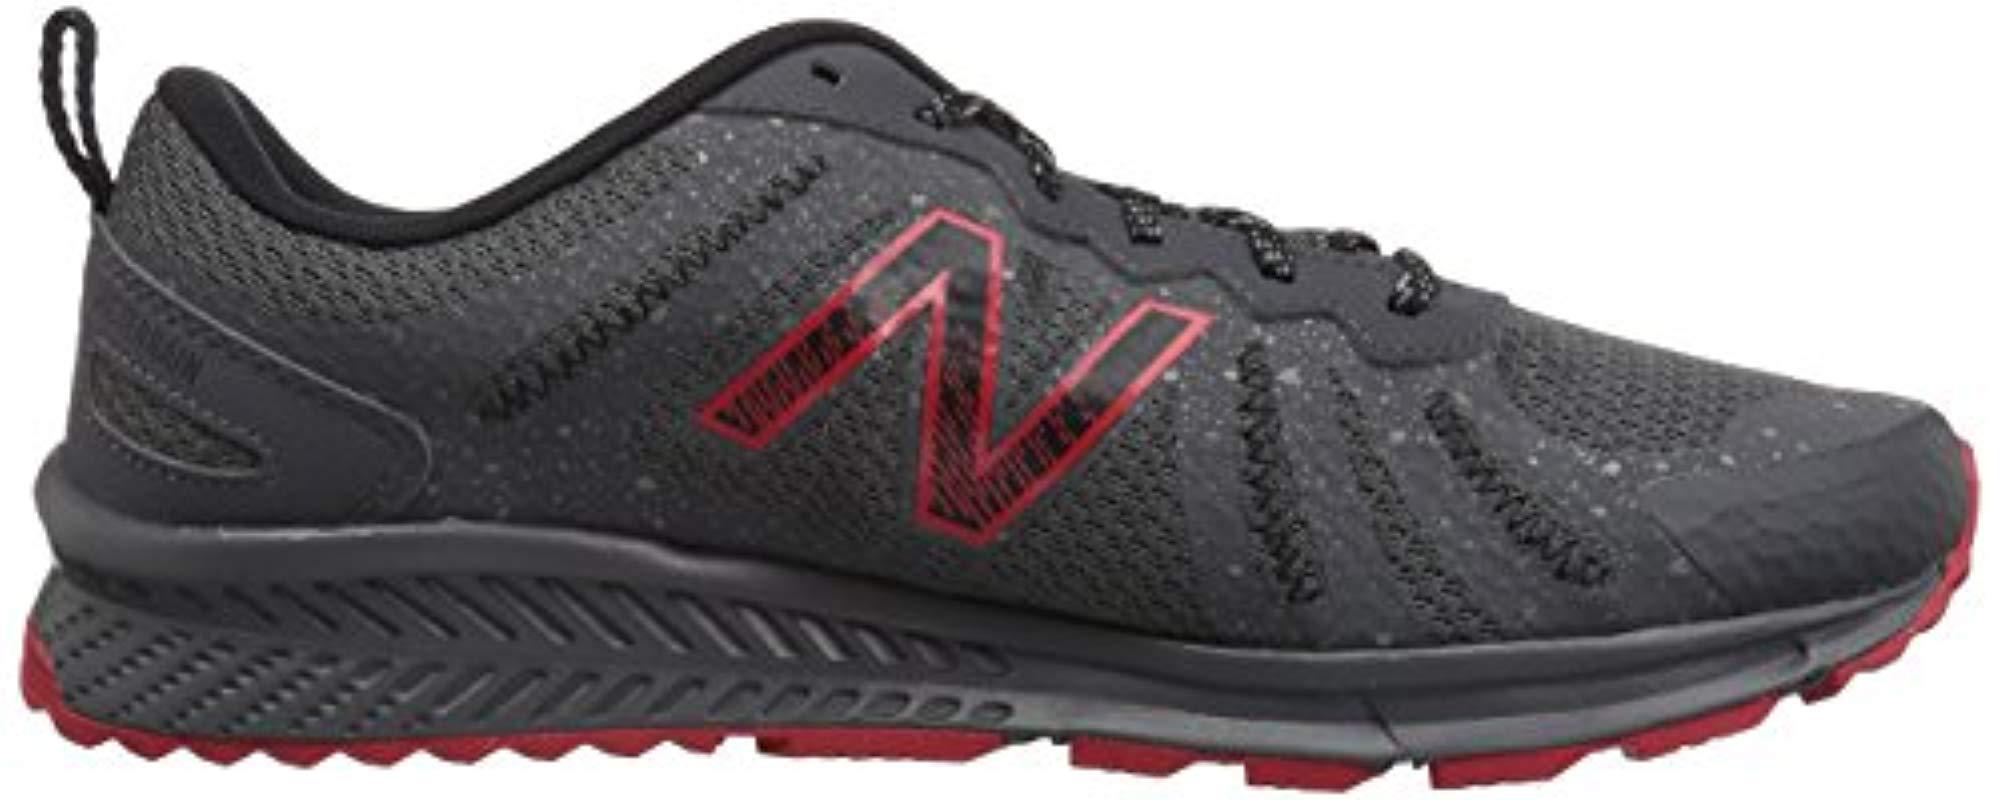 New 590 V4 Running Shoe in Black for | Lyst